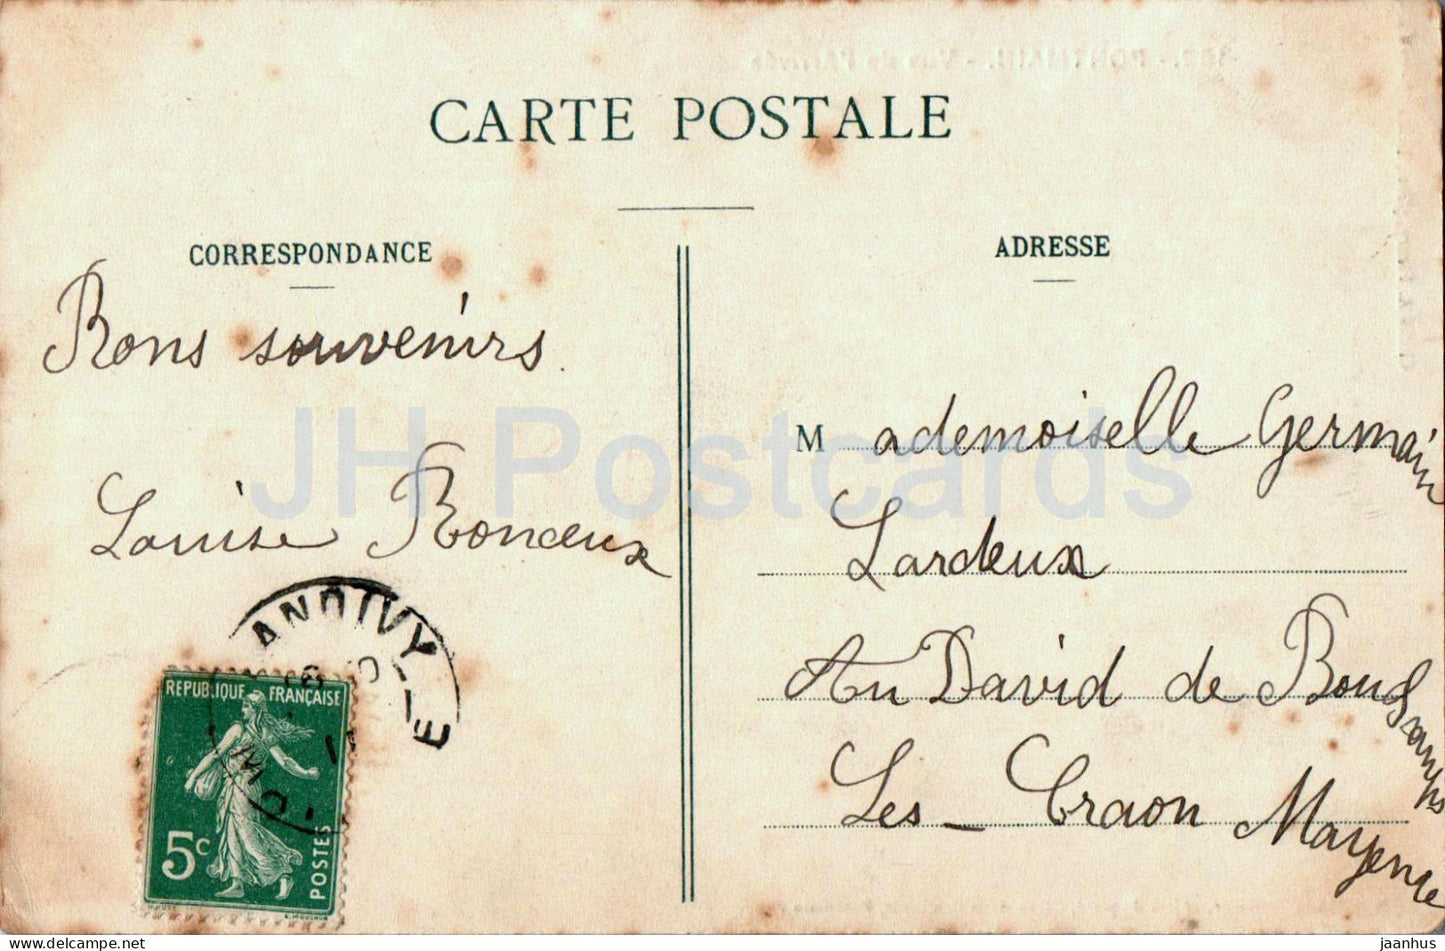 Pontmain - Vue de l'Arrivee - Eisenbahn - 152 - alte Postkarte - 1911 - Frankreich - gebraucht 